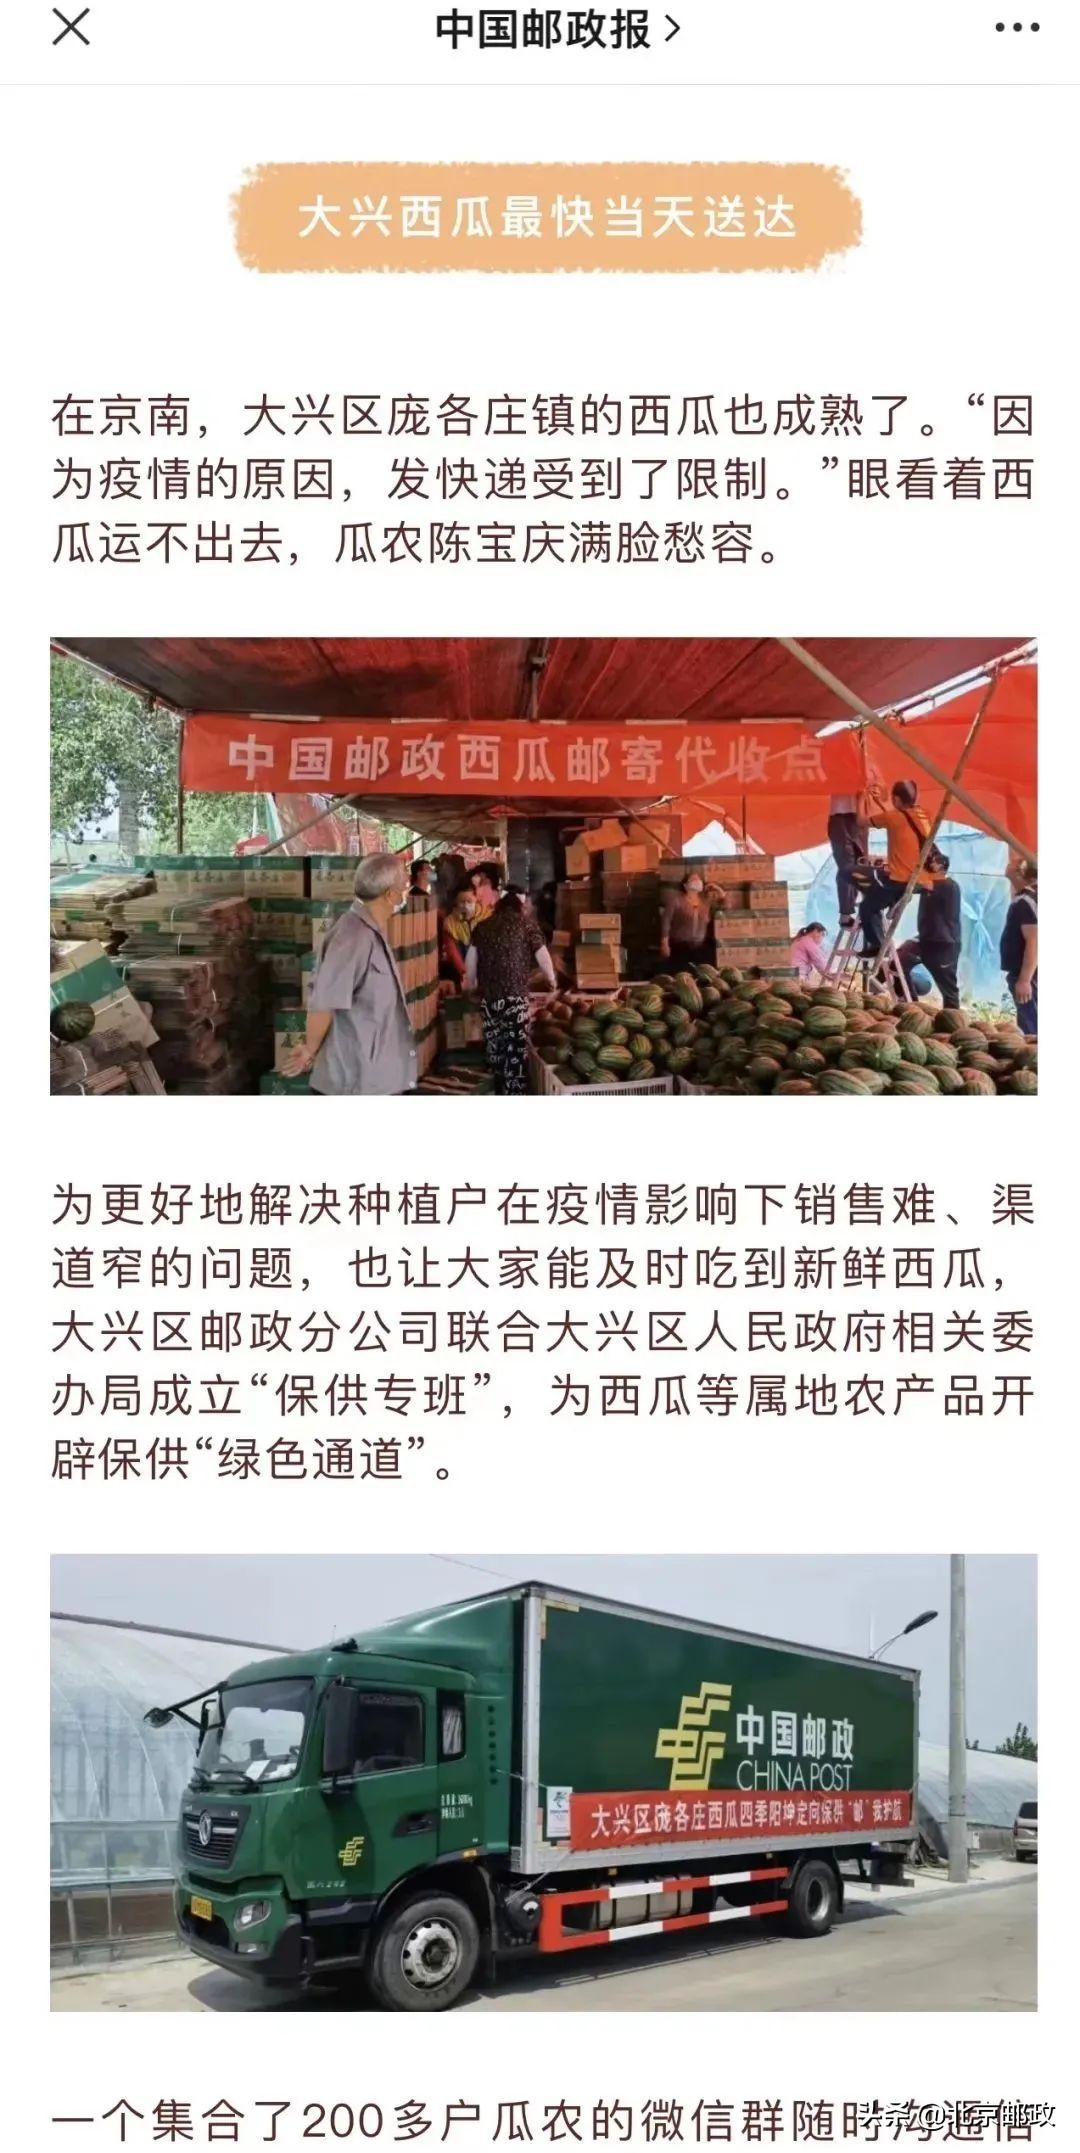 北京日报、北京电视台报道大兴邮政爱心助农“战疫情”